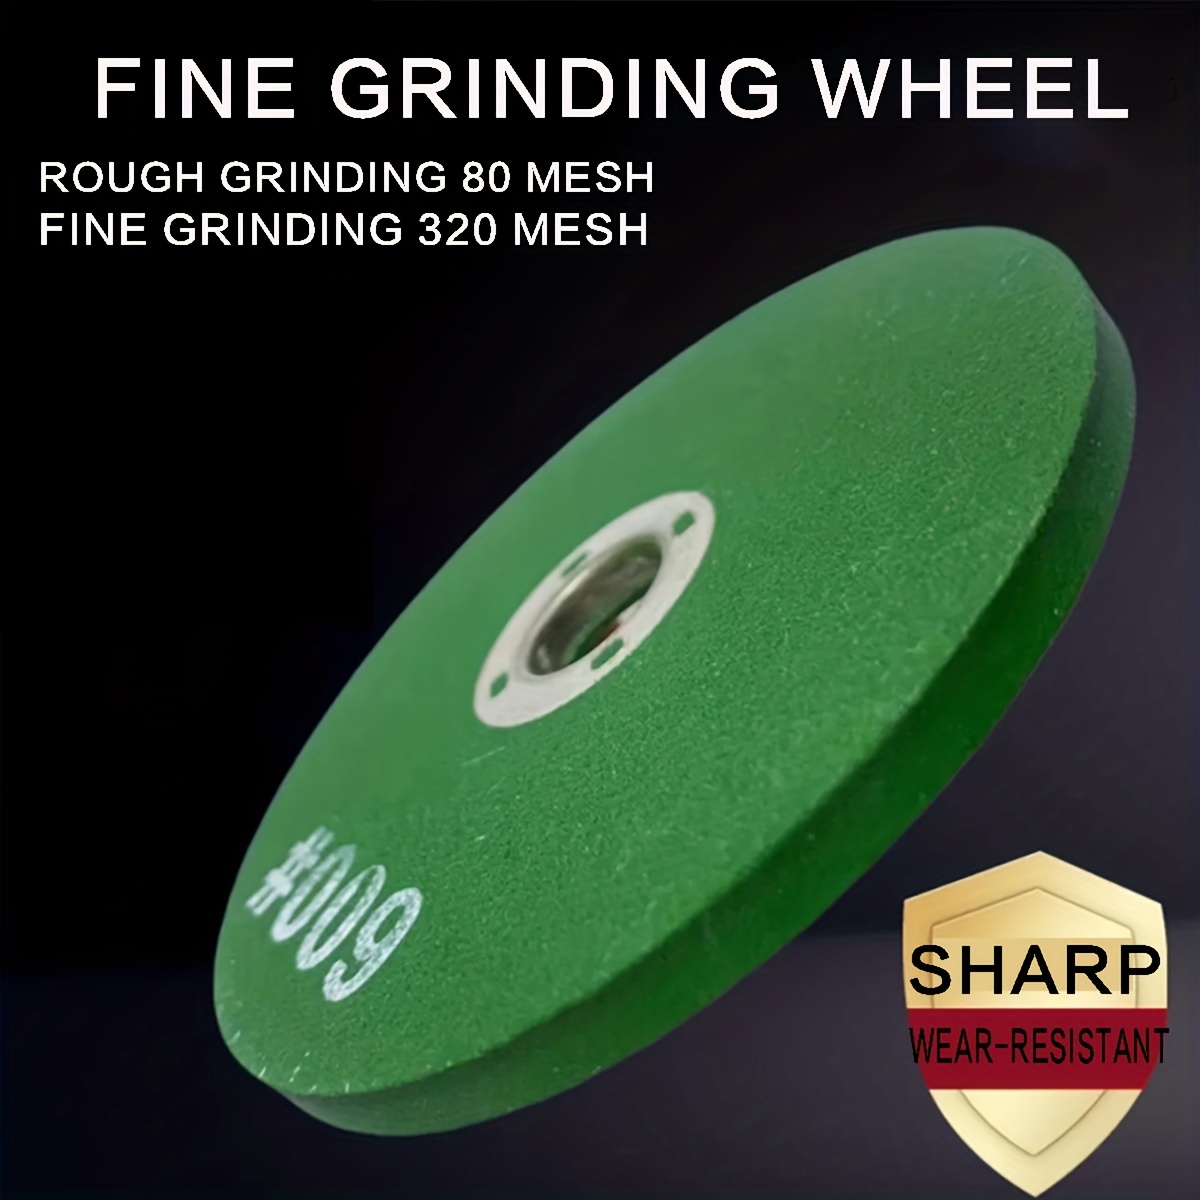 Grinding Wheel Resin Grinding Wheel 4-inch Grinding Wheel Grinding Rust  Polishing Wheel Grinding Knife Grinding Scissors Special Grinding Wheel